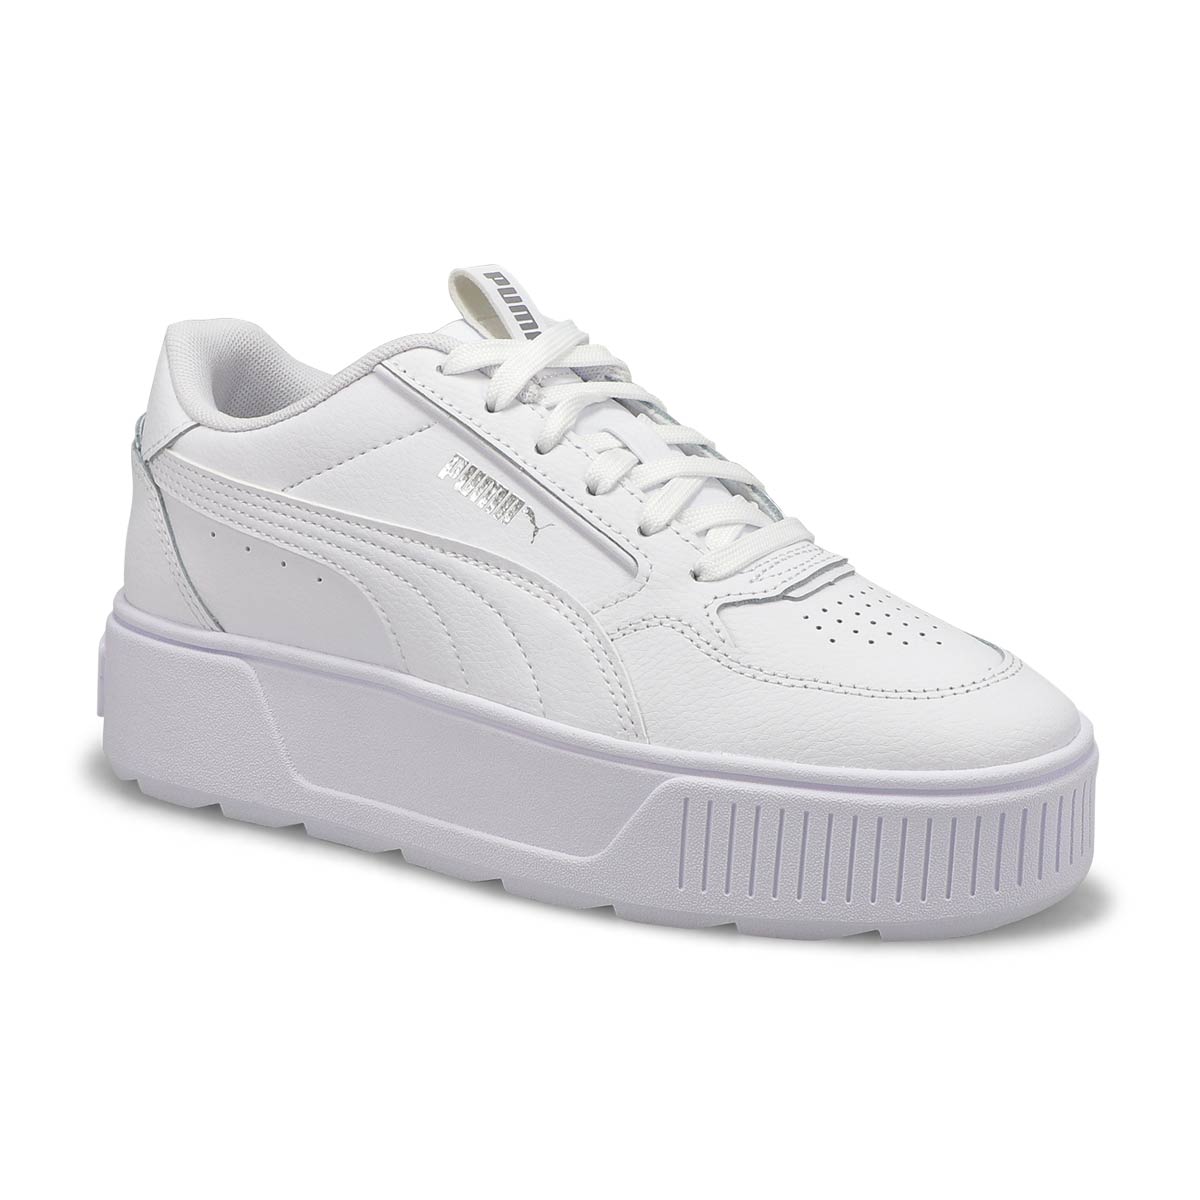 Girls' Karmen Rebelle Jr Sneaker - White